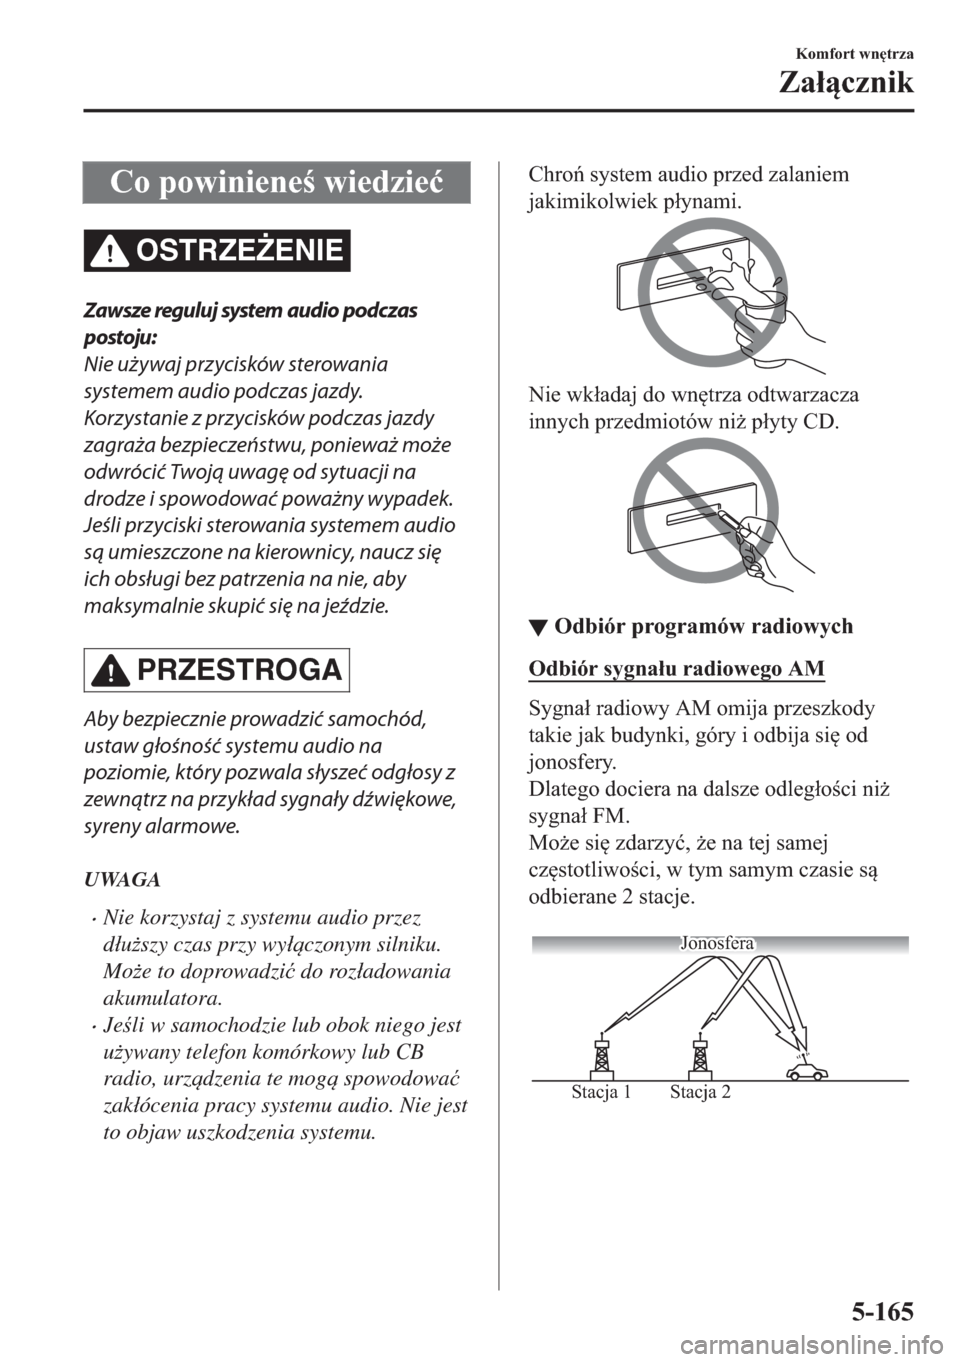 MAZDA MODEL 2 2019  Instrukcja Obsługi (in Polish) �&�R��S�R�Z�L�Q�L�H�Q�H��Z�L�H�G�]�L�H�ü
OSTRZE)ENIE
Zawsze reguluj system audio podczas
postoju:
Nie używaj przycisków sterowania
systemem audio podczas jazdy.
Korzystanie z przycisków podcz